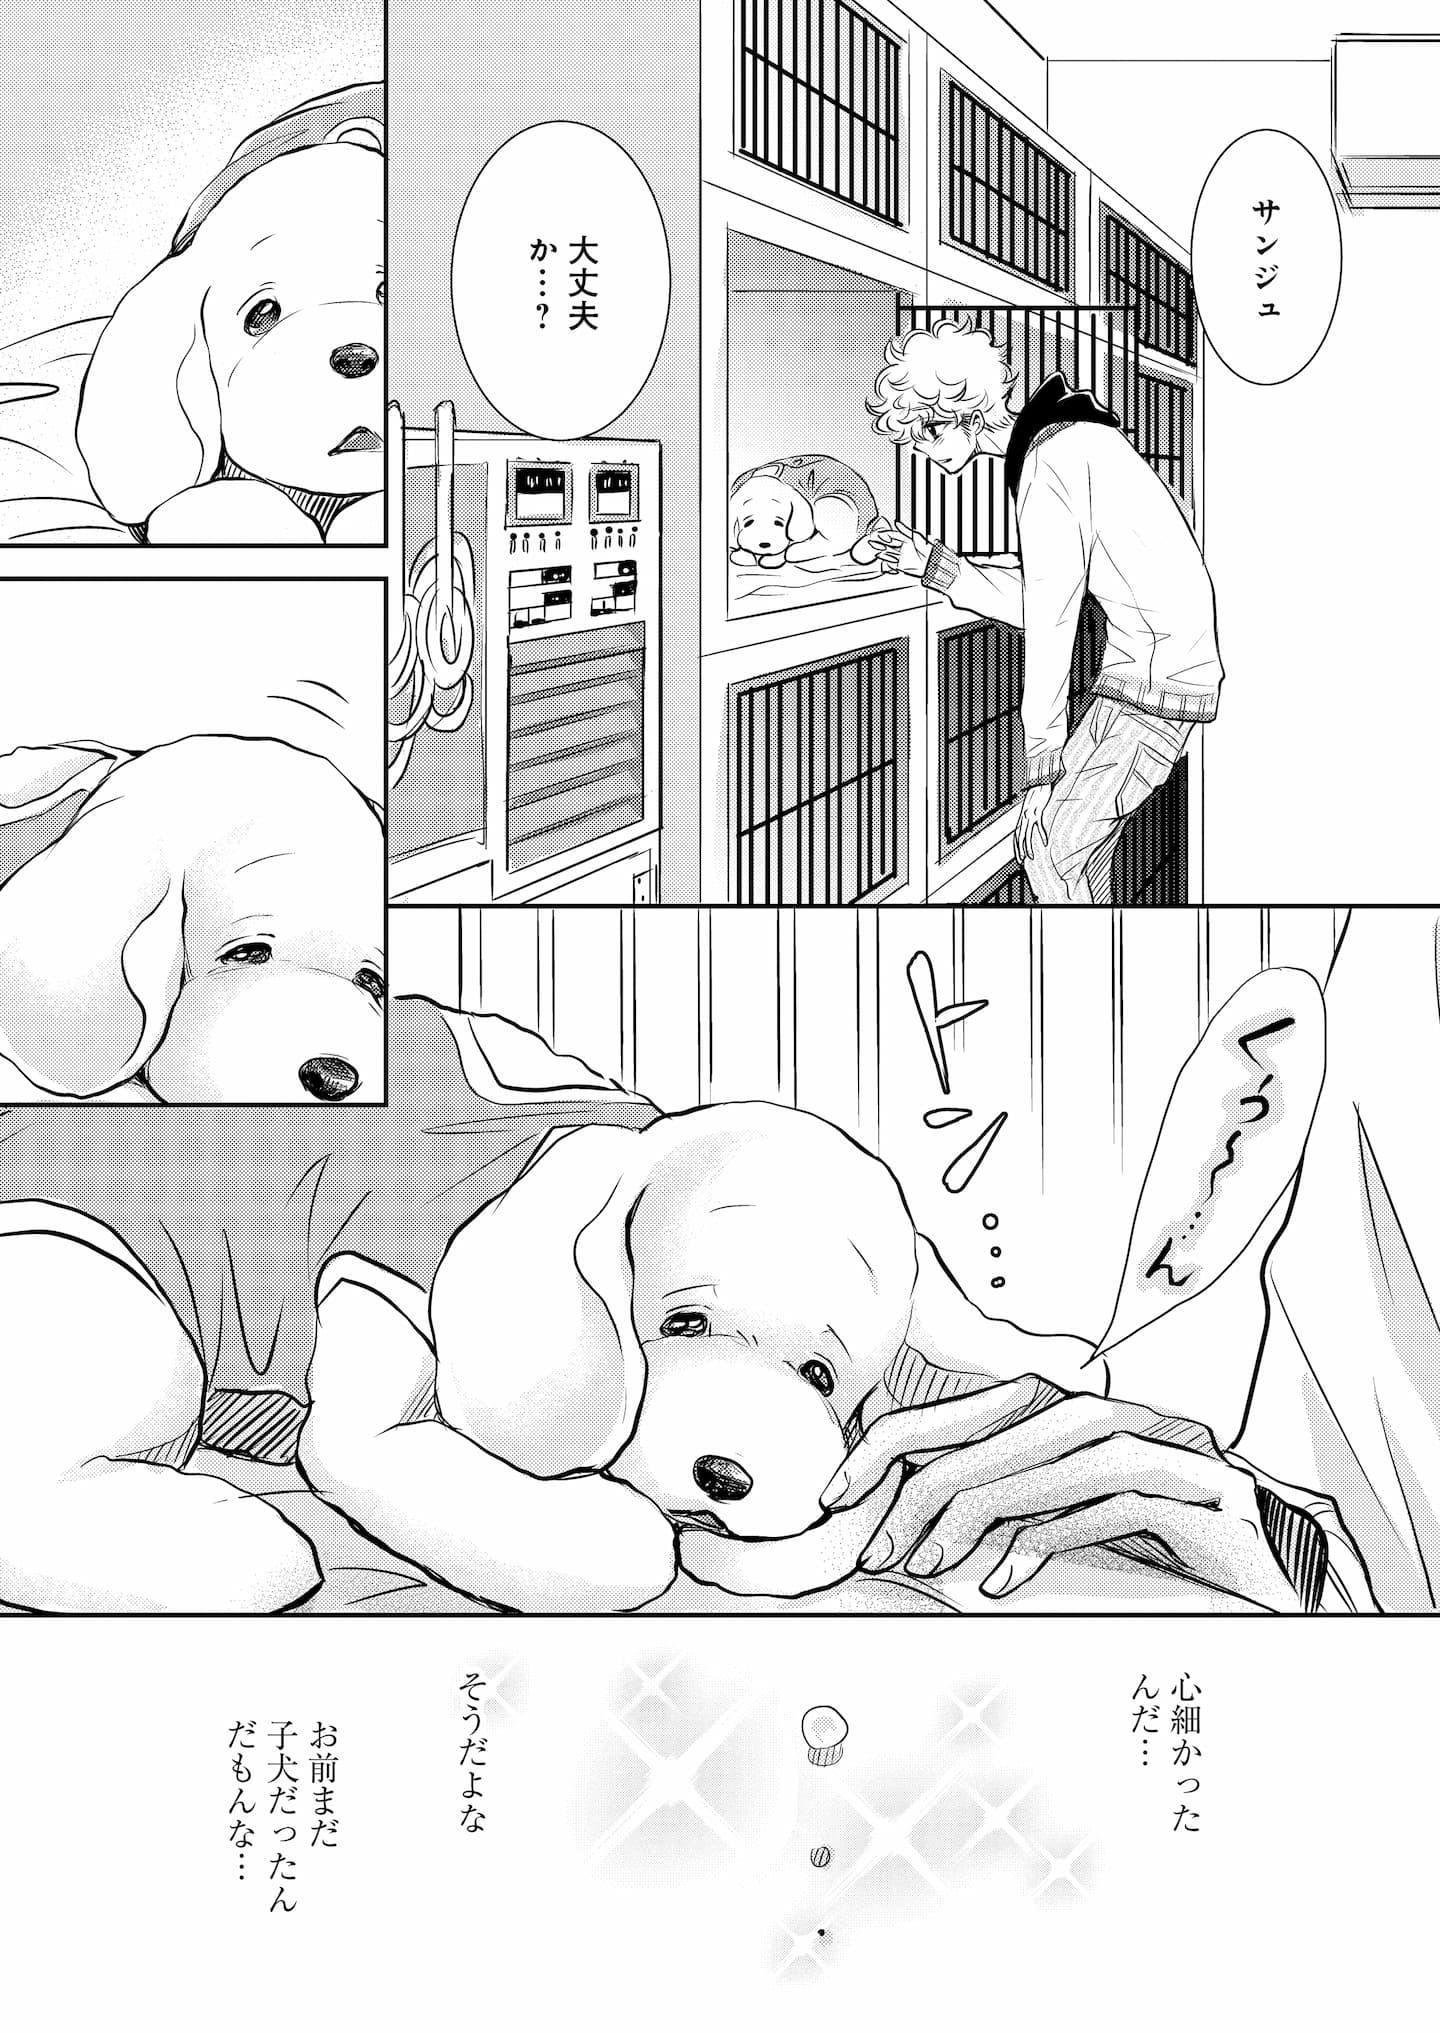 『DOG SIGNAL』6話目④　2ページ目